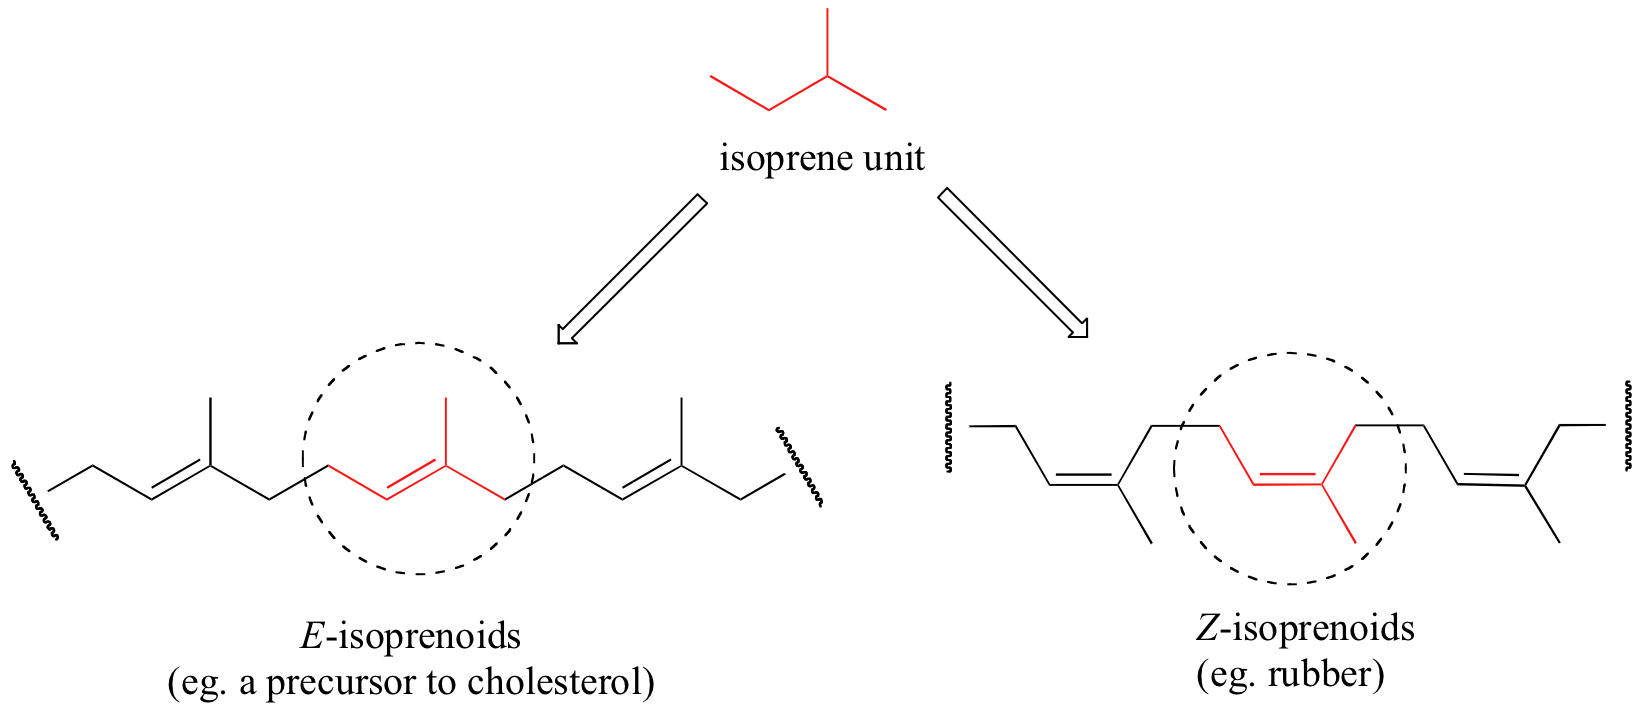 Unidad de isopreno en la parte superior en rojo. Dos flechas de la unidad de isopreno. La flecha izquierda va a E-isoprenoides (por ejemplo, un precursor del colesterol). La flecha derecha va a Z-isoprenoides (por ejemplo, caucho).